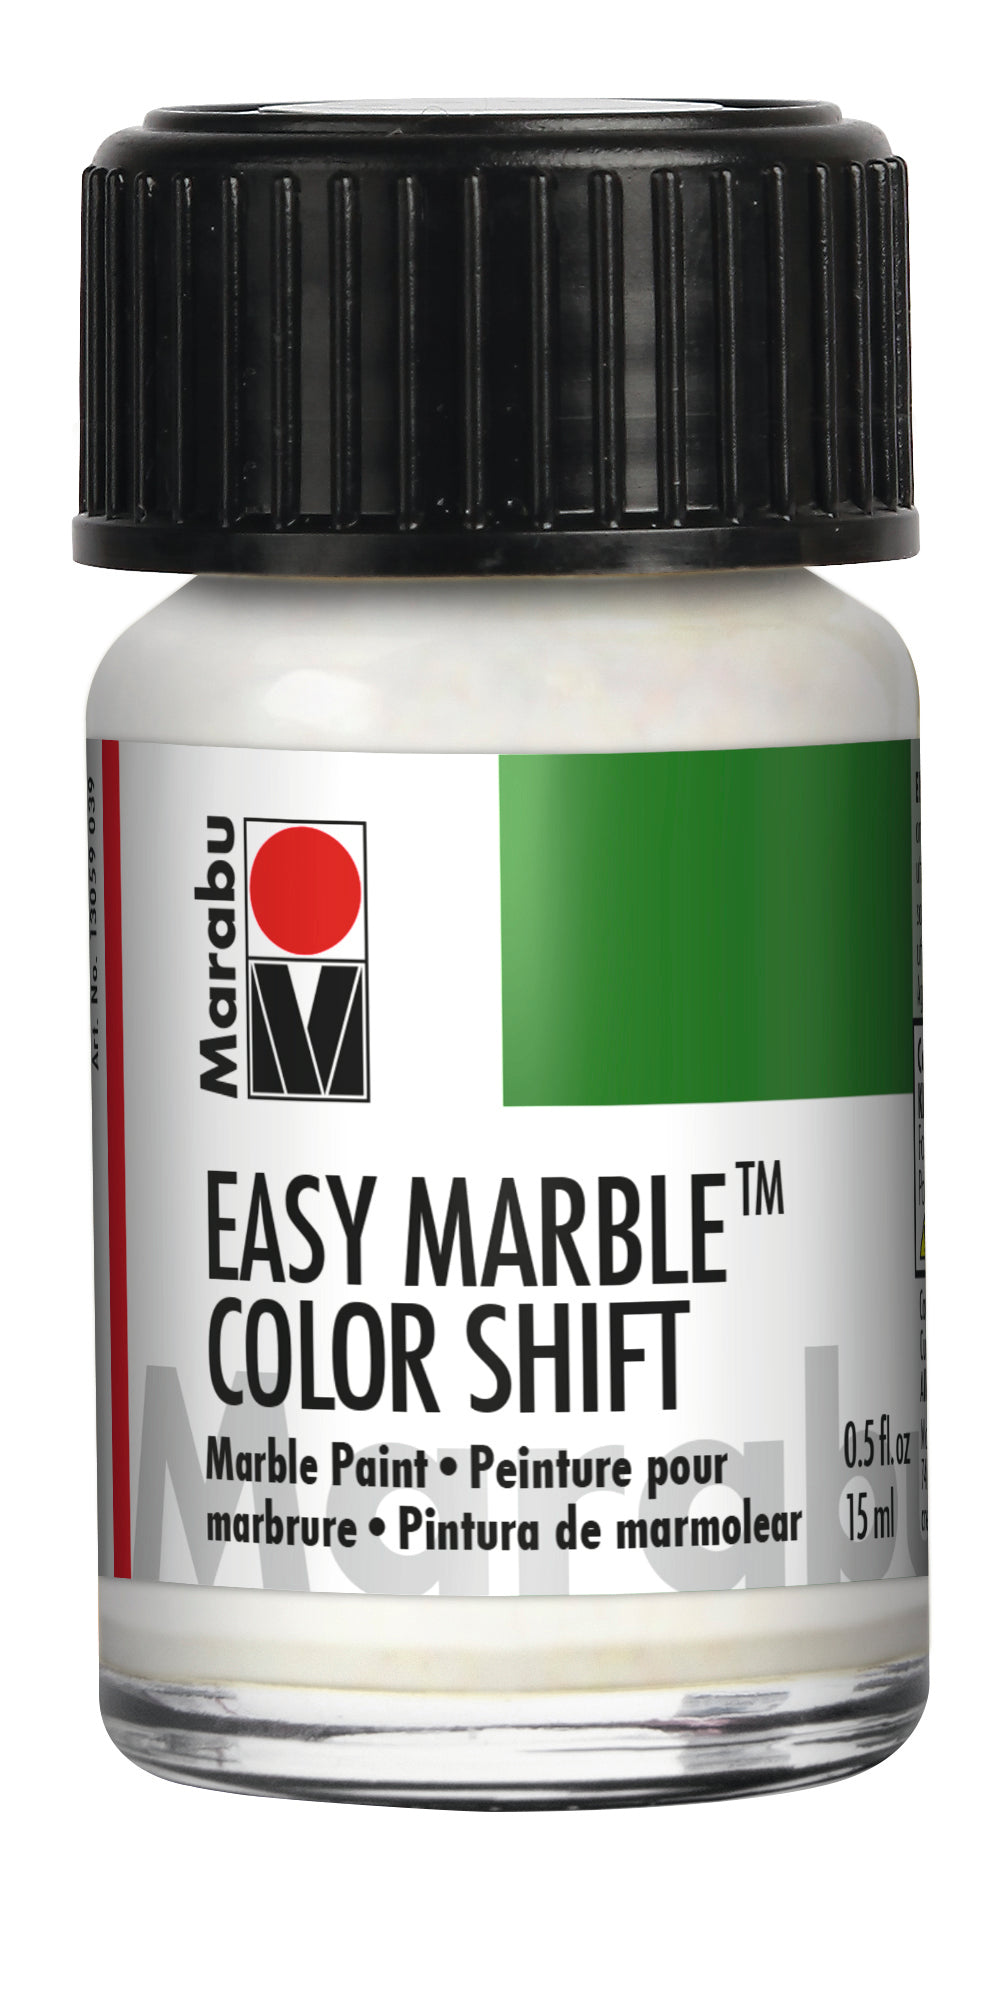 Glitter Blue/Green/Gold Marabu Easy Marble 516